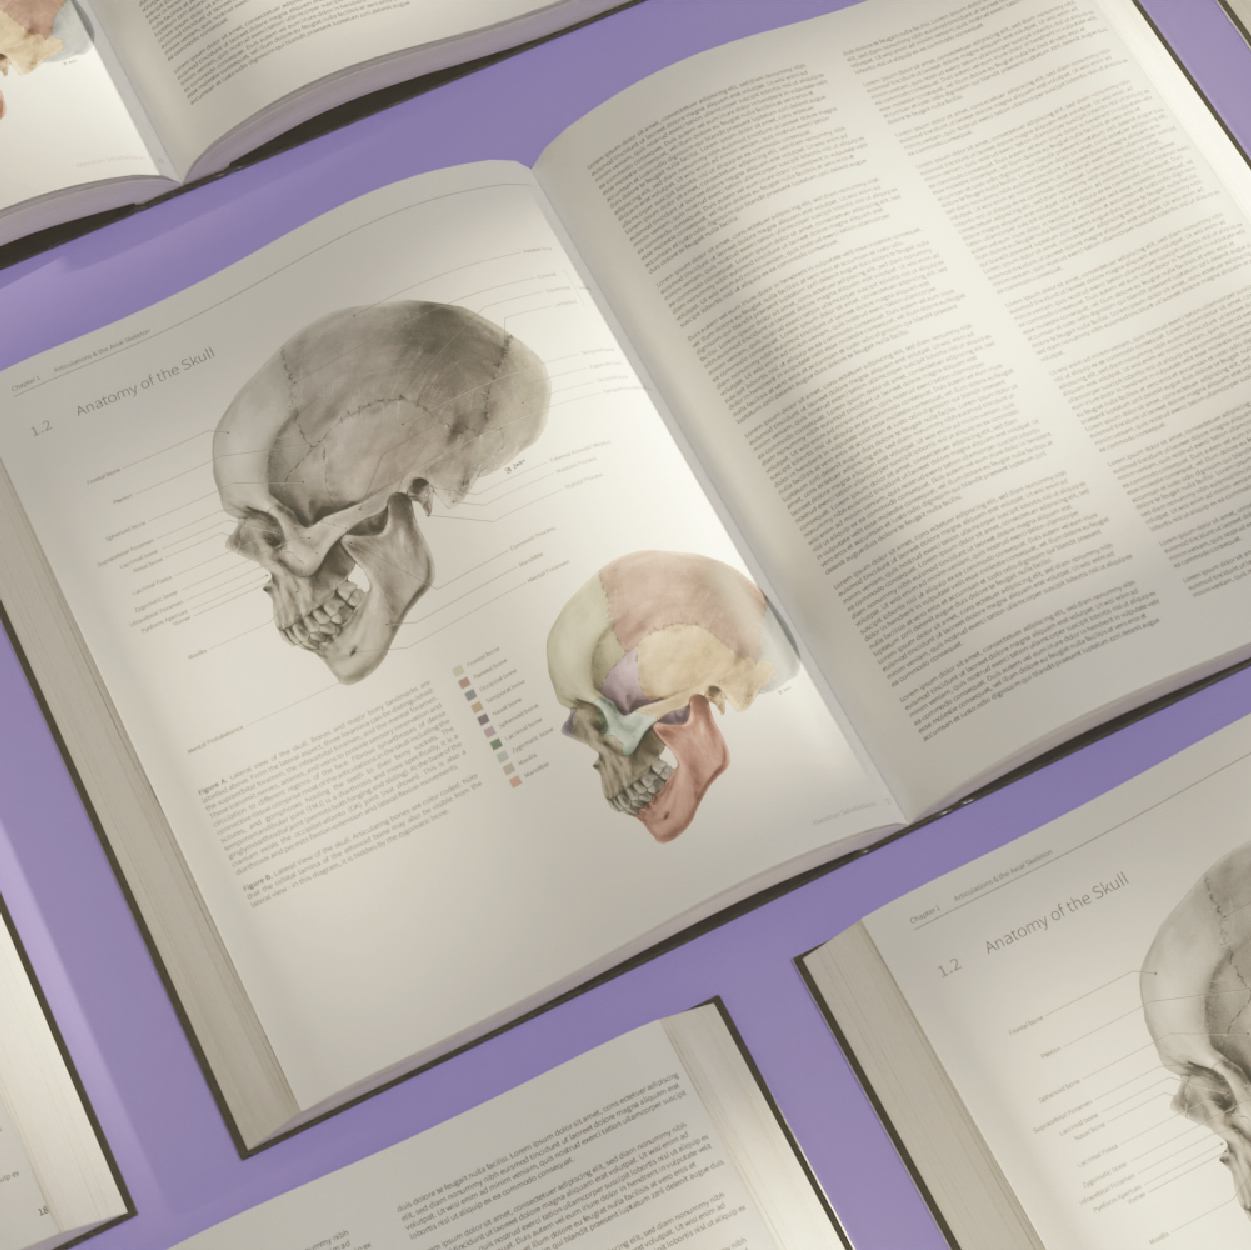 Thumbnail image of Lateral Skull Textbook mockup